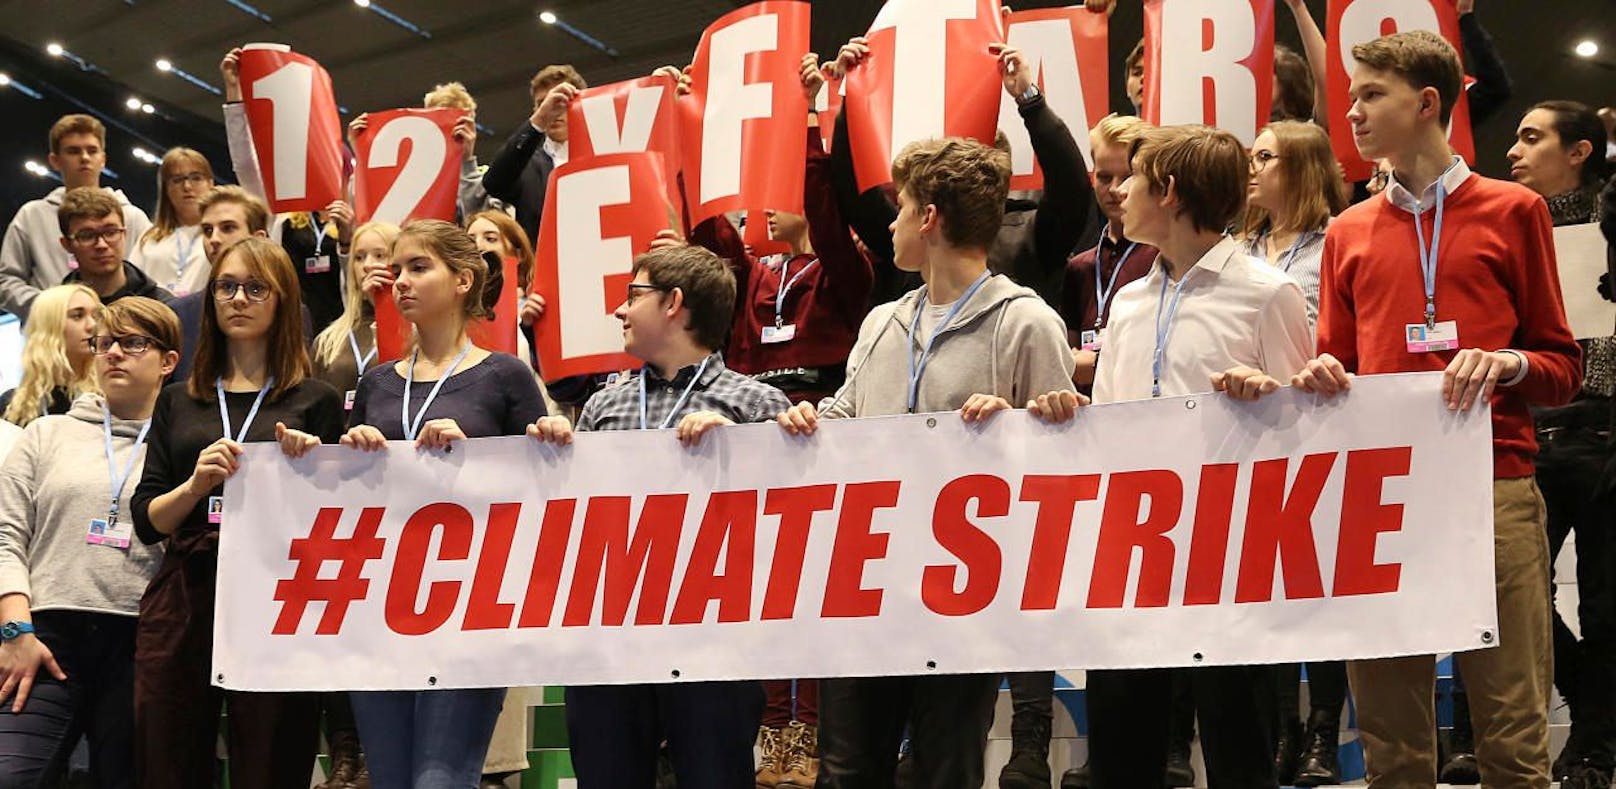 Polnische Schüler demonstrieren für mehr Umweltschutz.